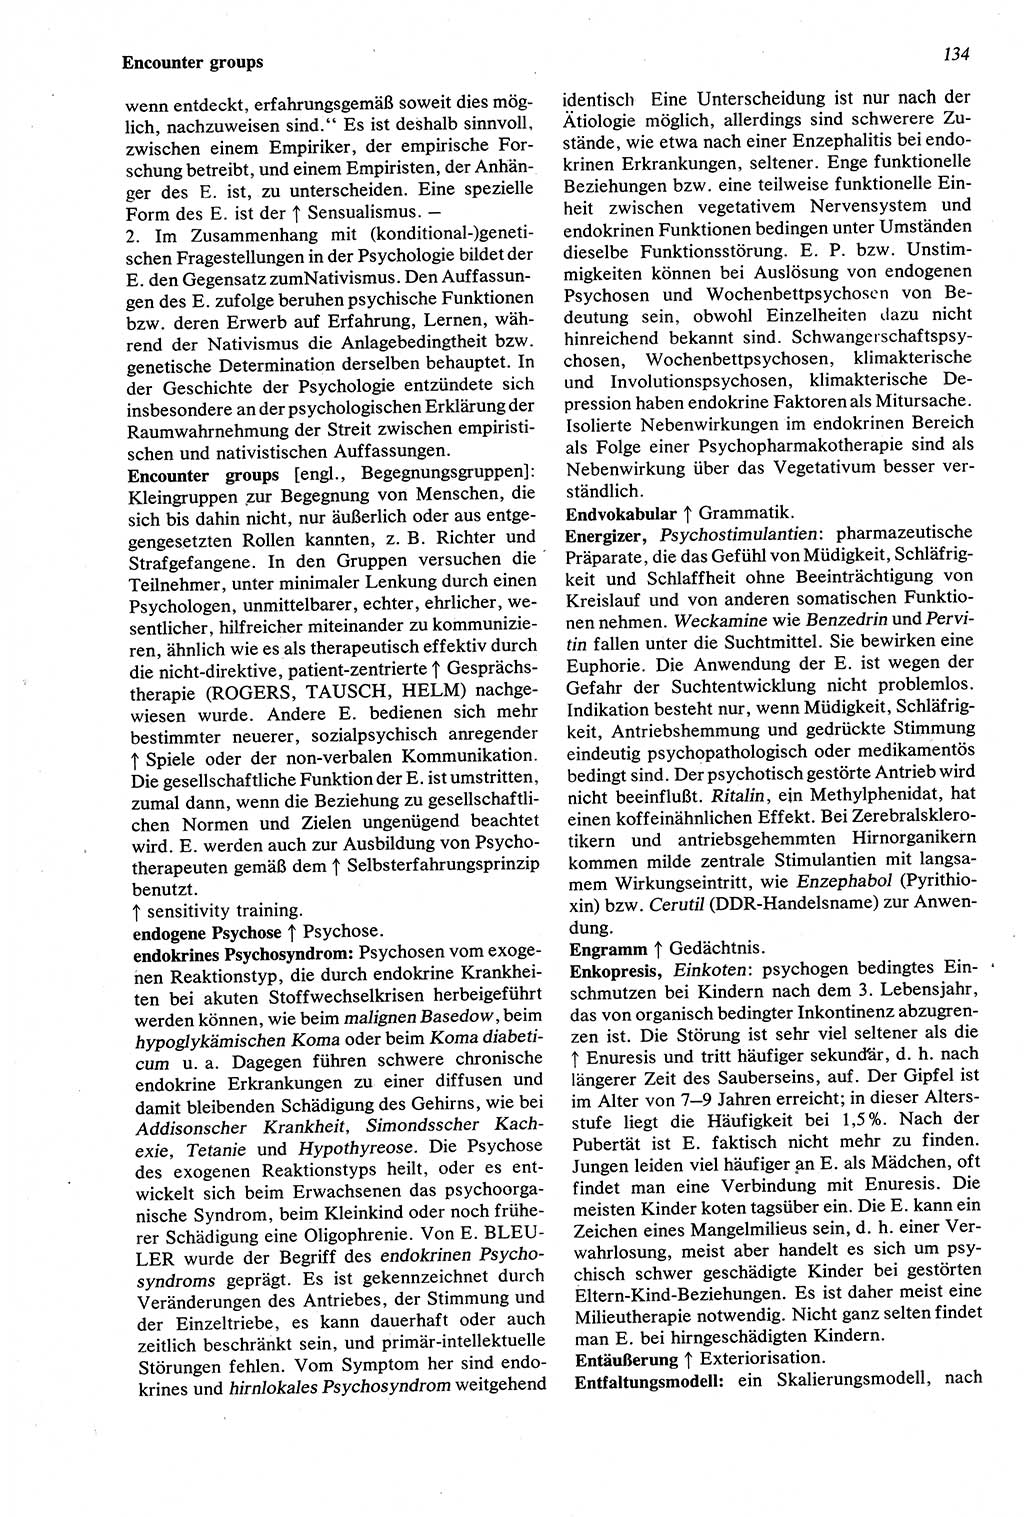 Wörterbuch der Psychologie [Deutsche Demokratische Republik (DDR)] 1976, Seite 134 (Wb. Psych. DDR 1976, S. 134)